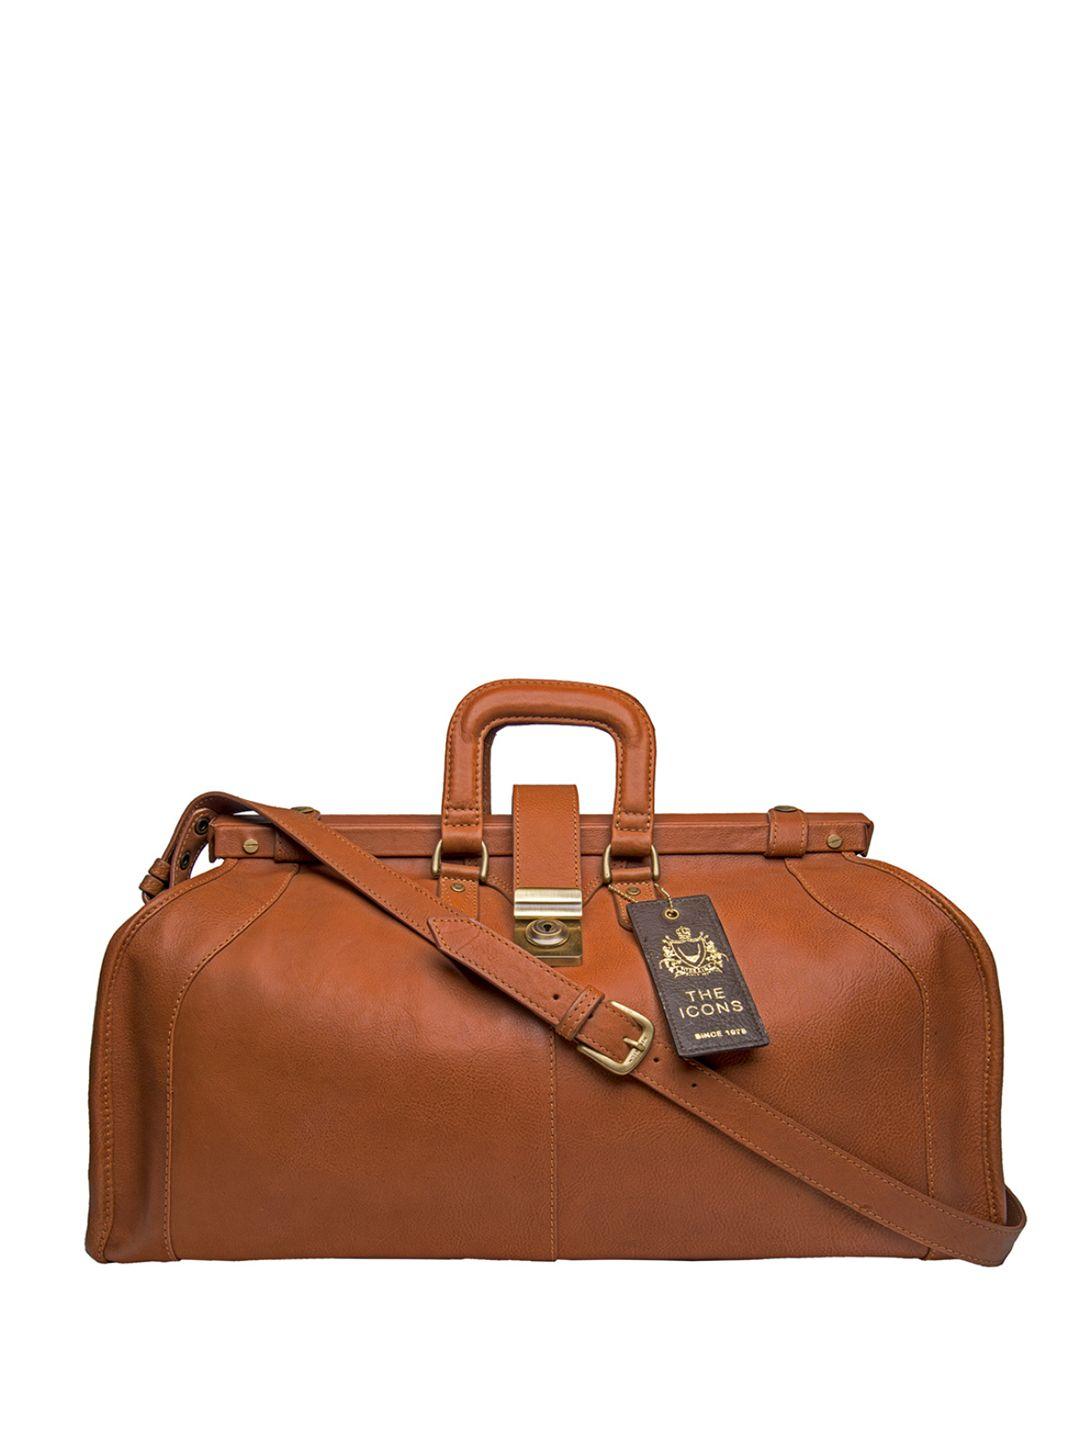 hidesign men tan brown solid leather safari duffel bag